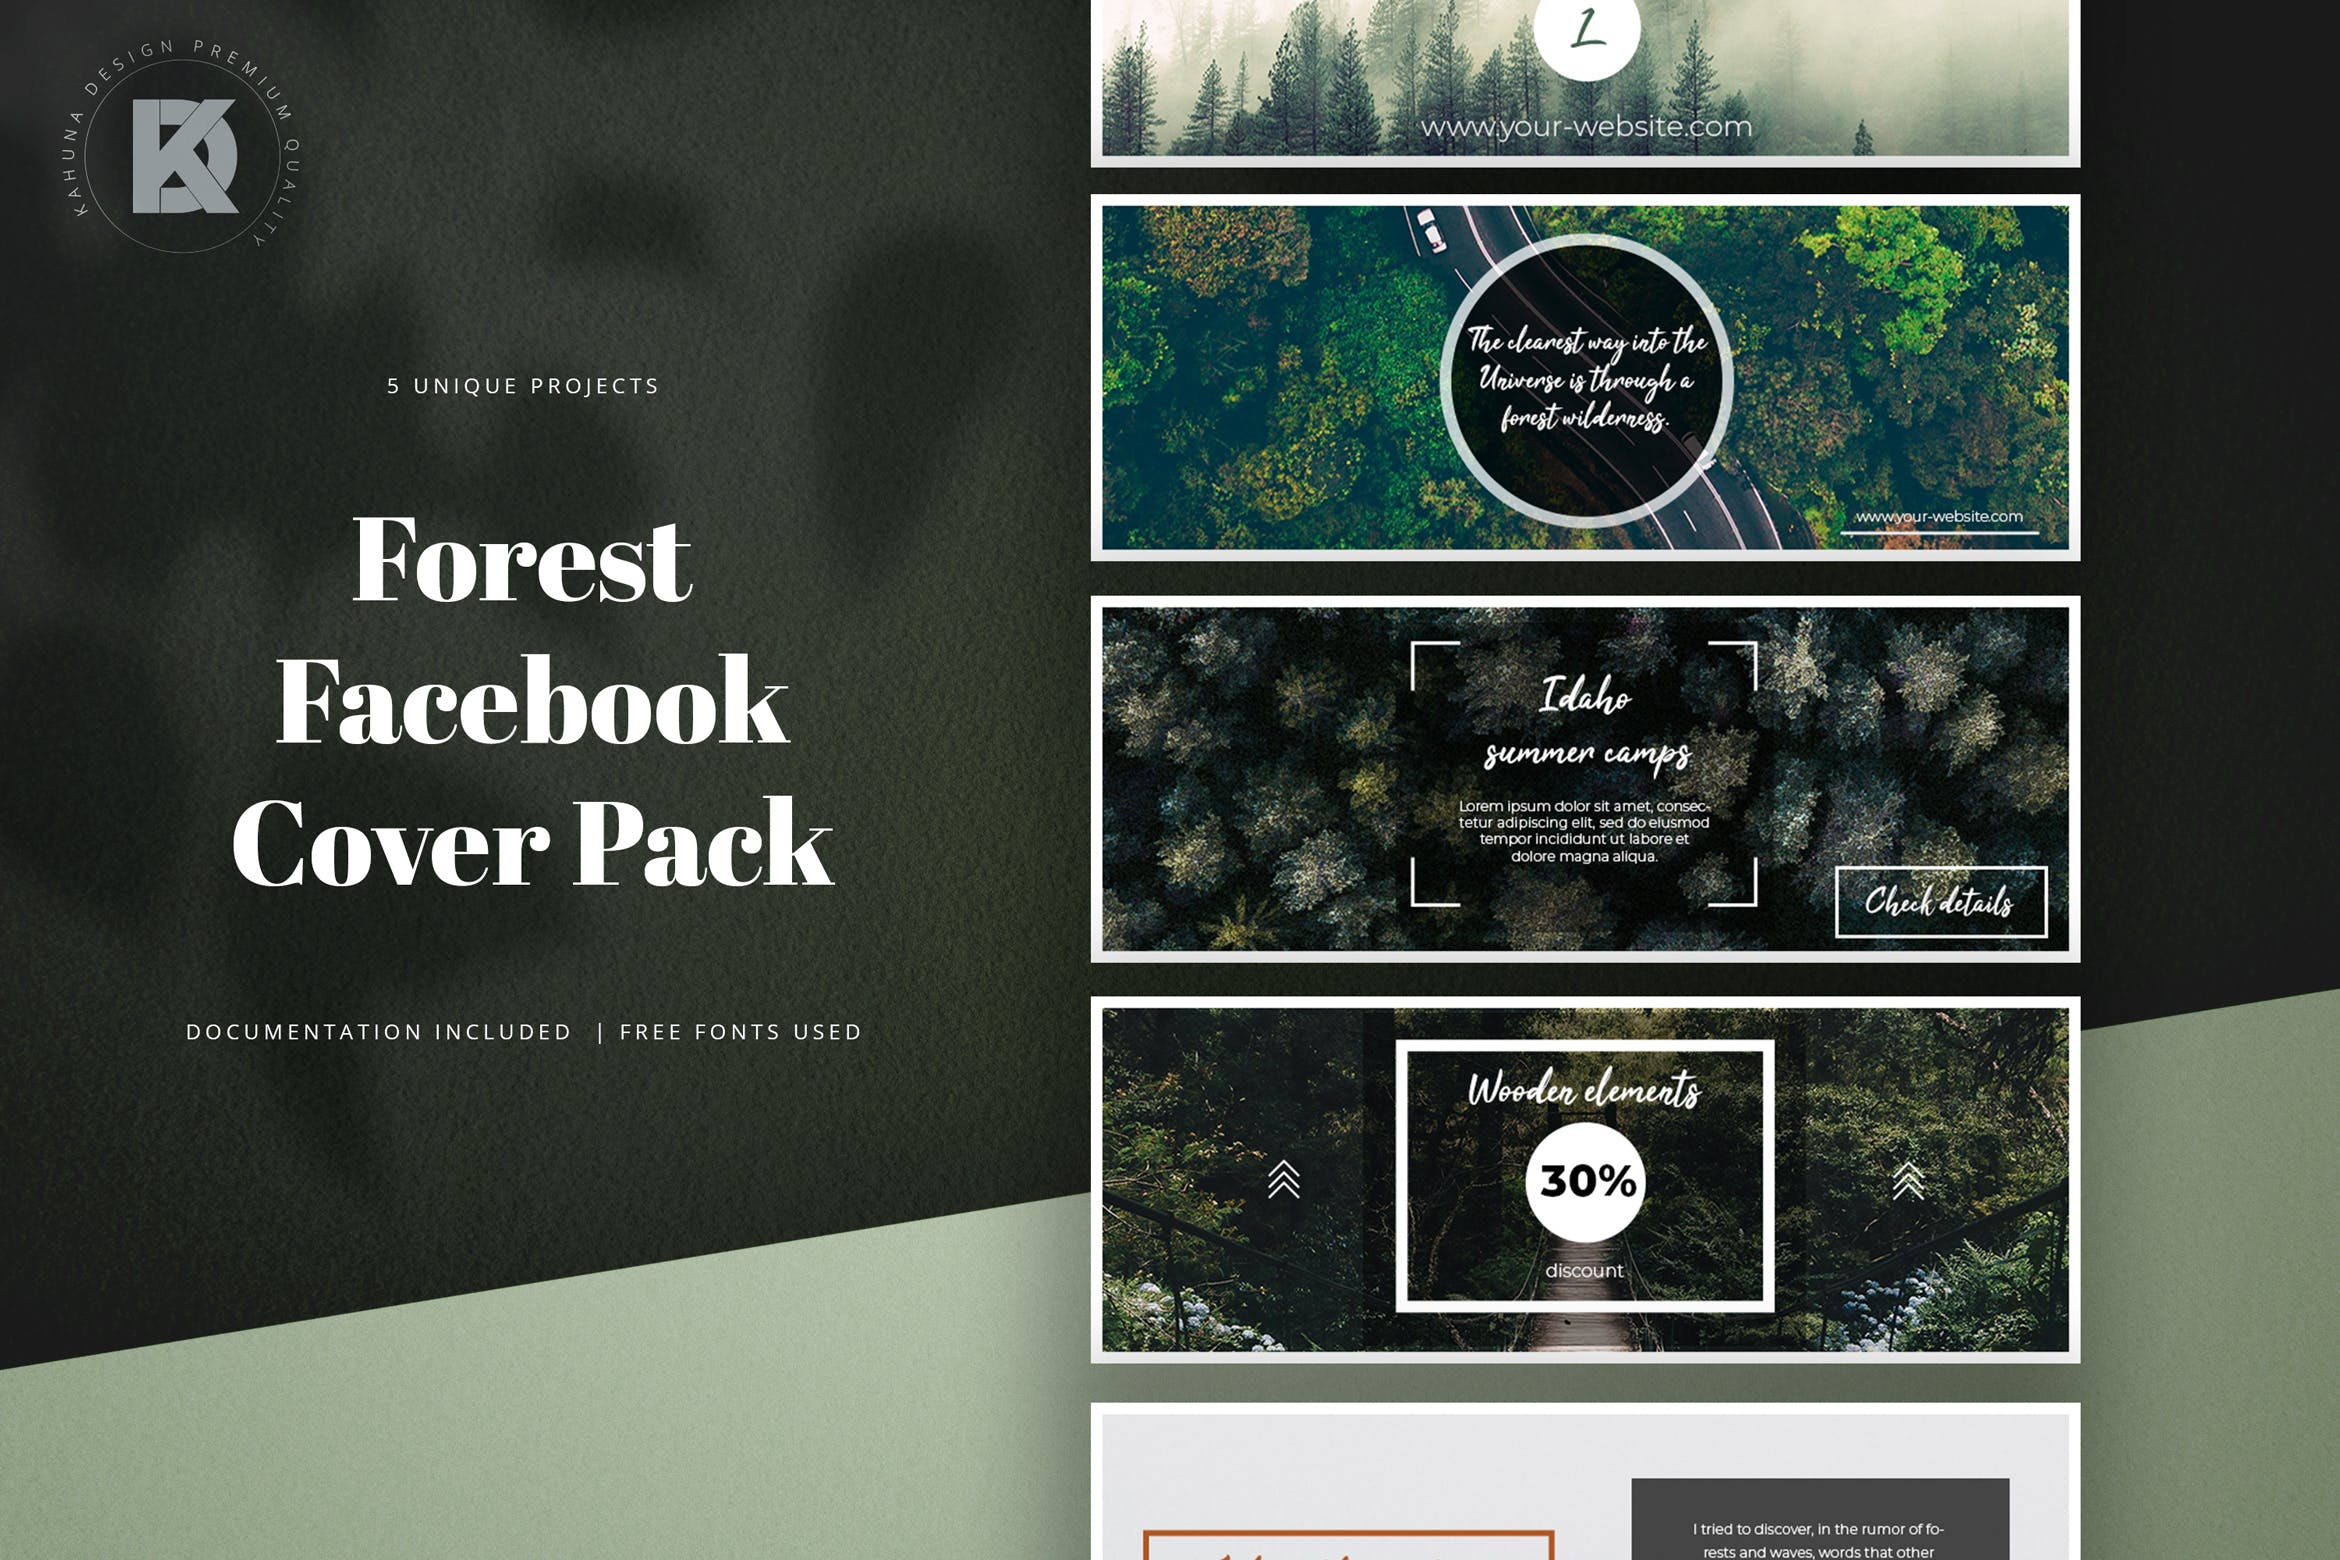 社交网站企业/品牌专业封面设计模板蚂蚁素材精选 Forest Facebook Cover Kit插图